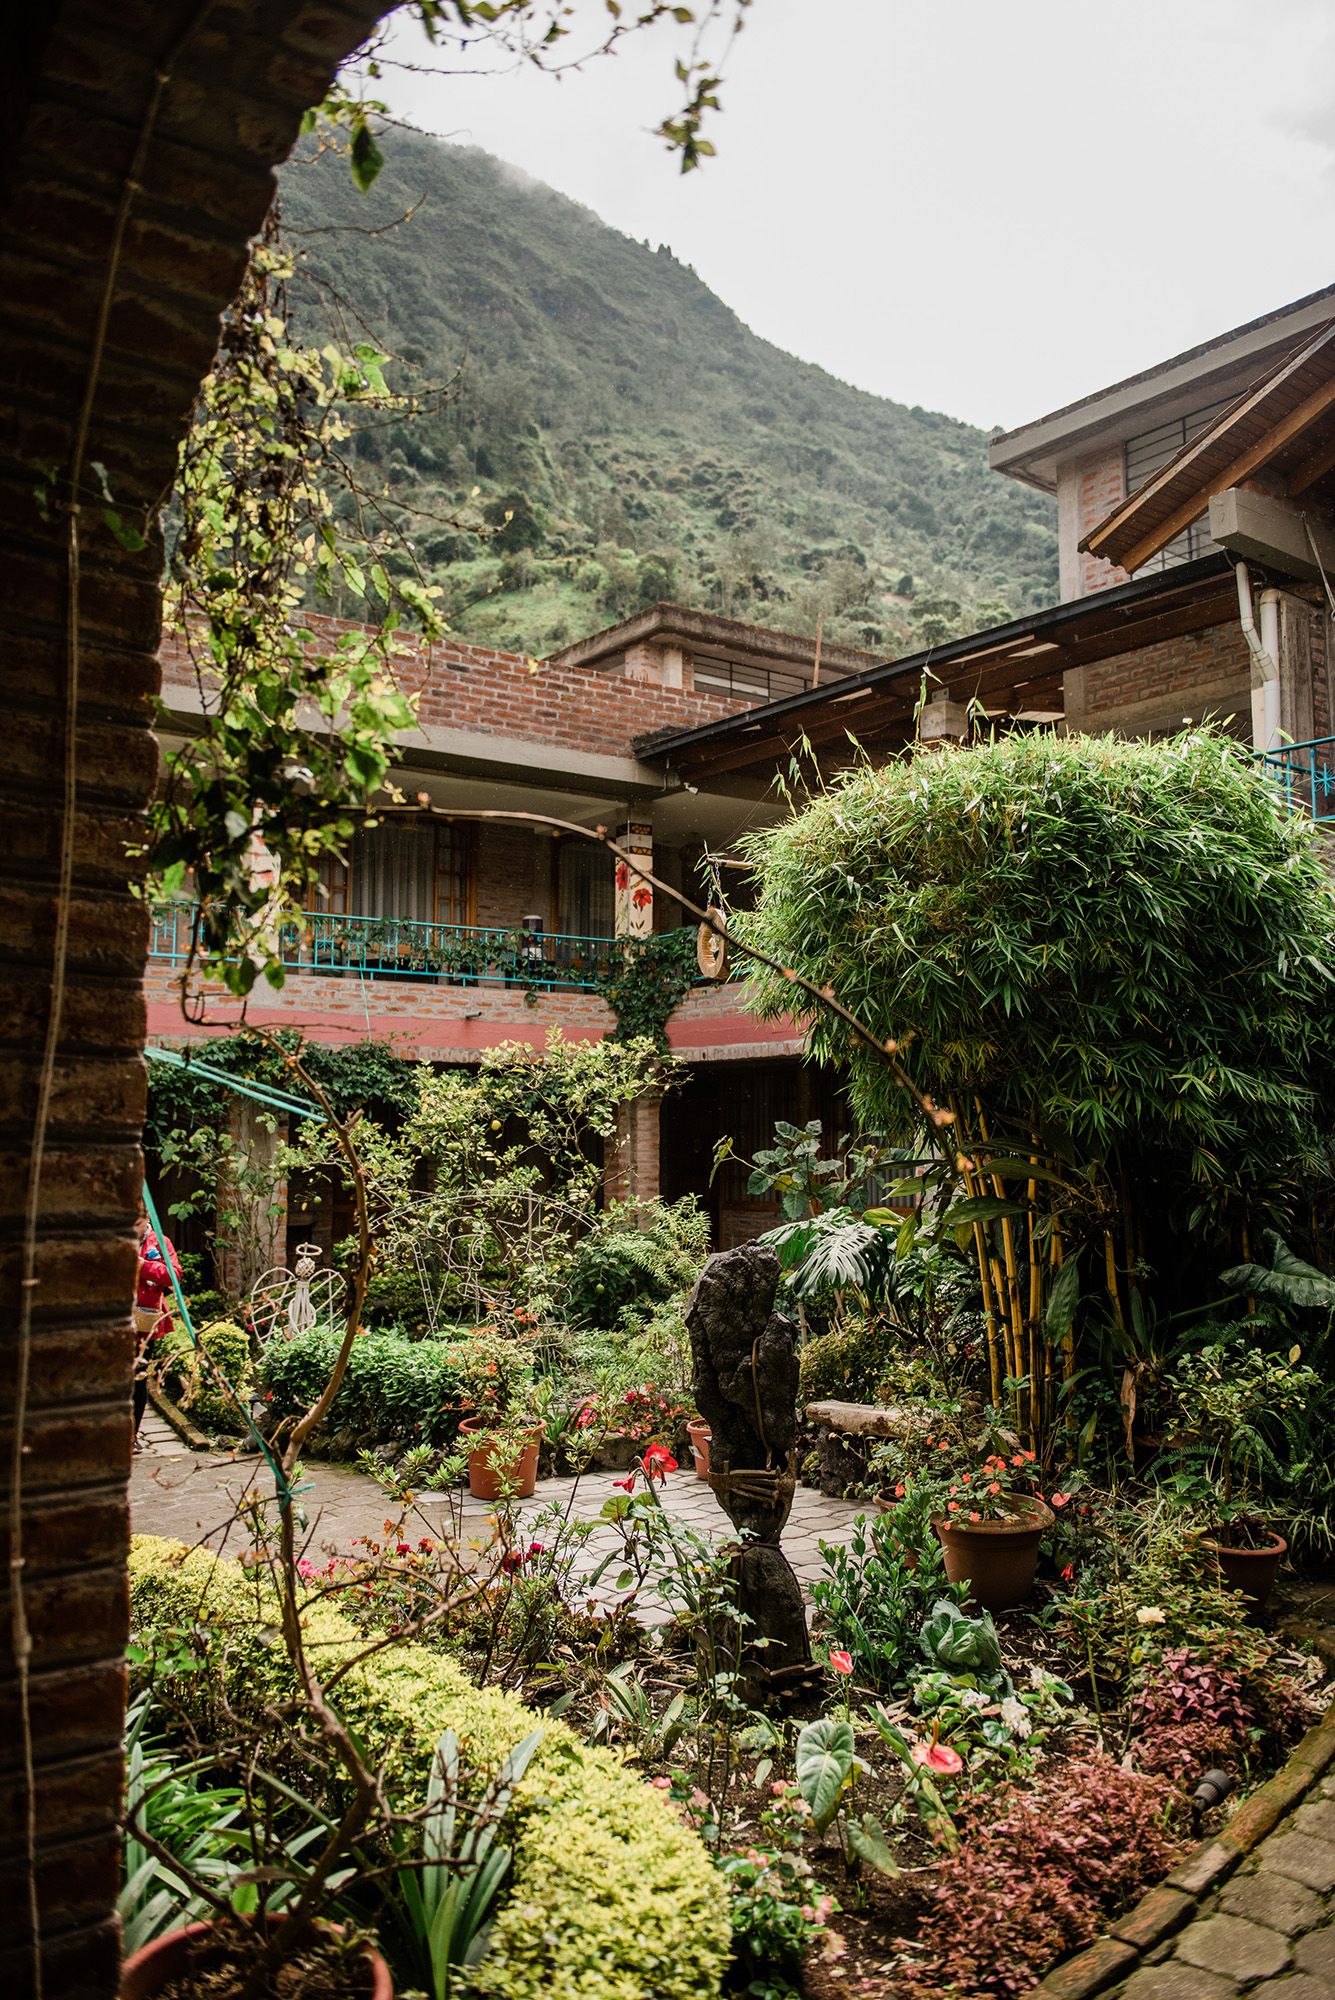 Baños, Ecuador - La Floresta Hotel